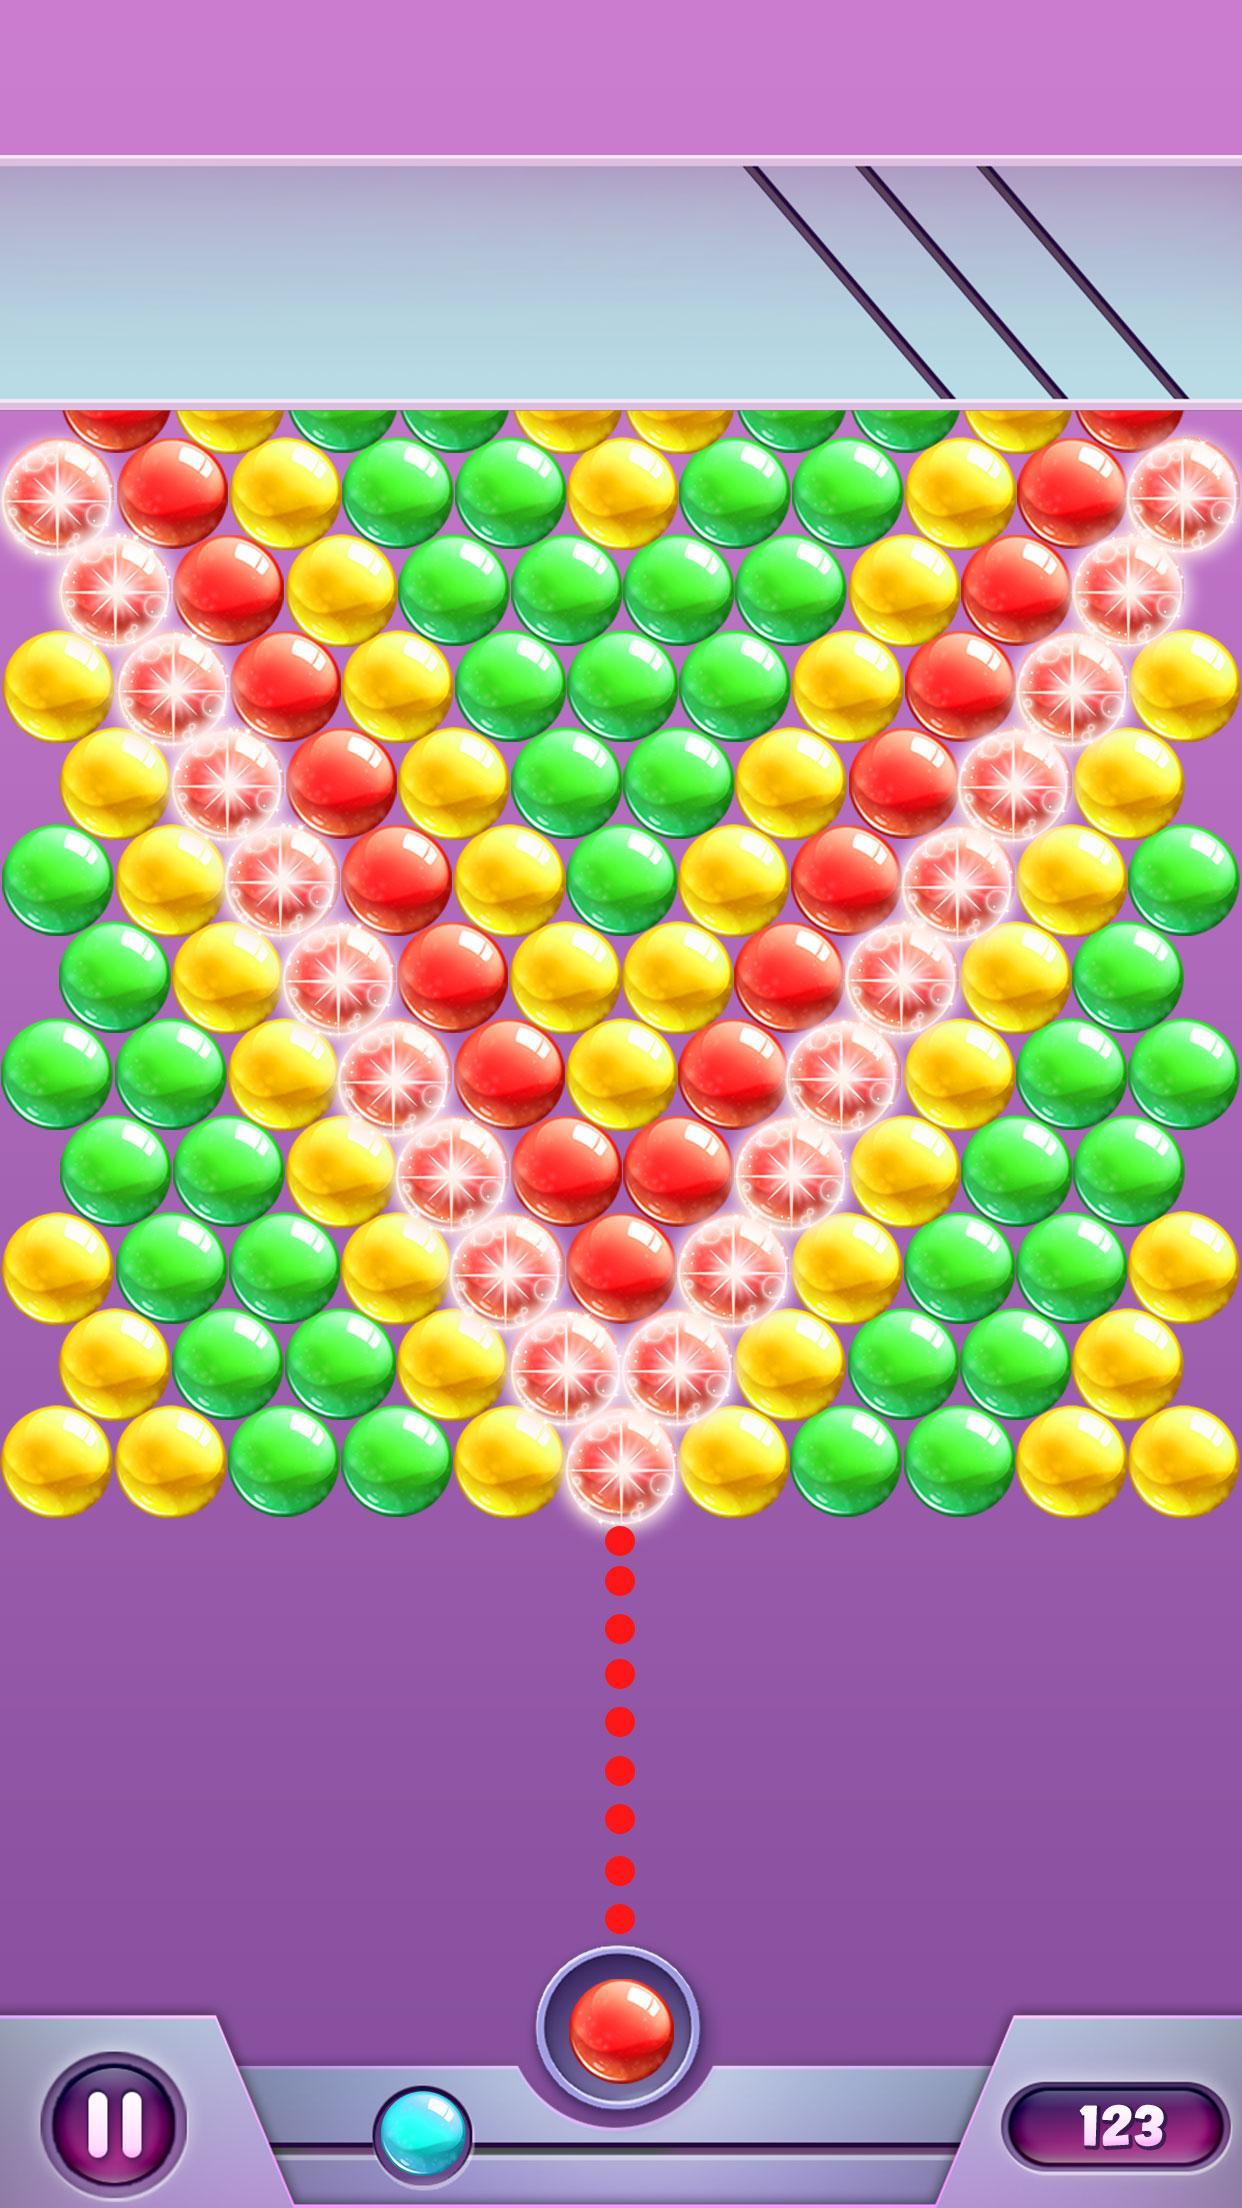 Screenshot 1 of ज्यादा उछाल वाली गेंदें 1.2